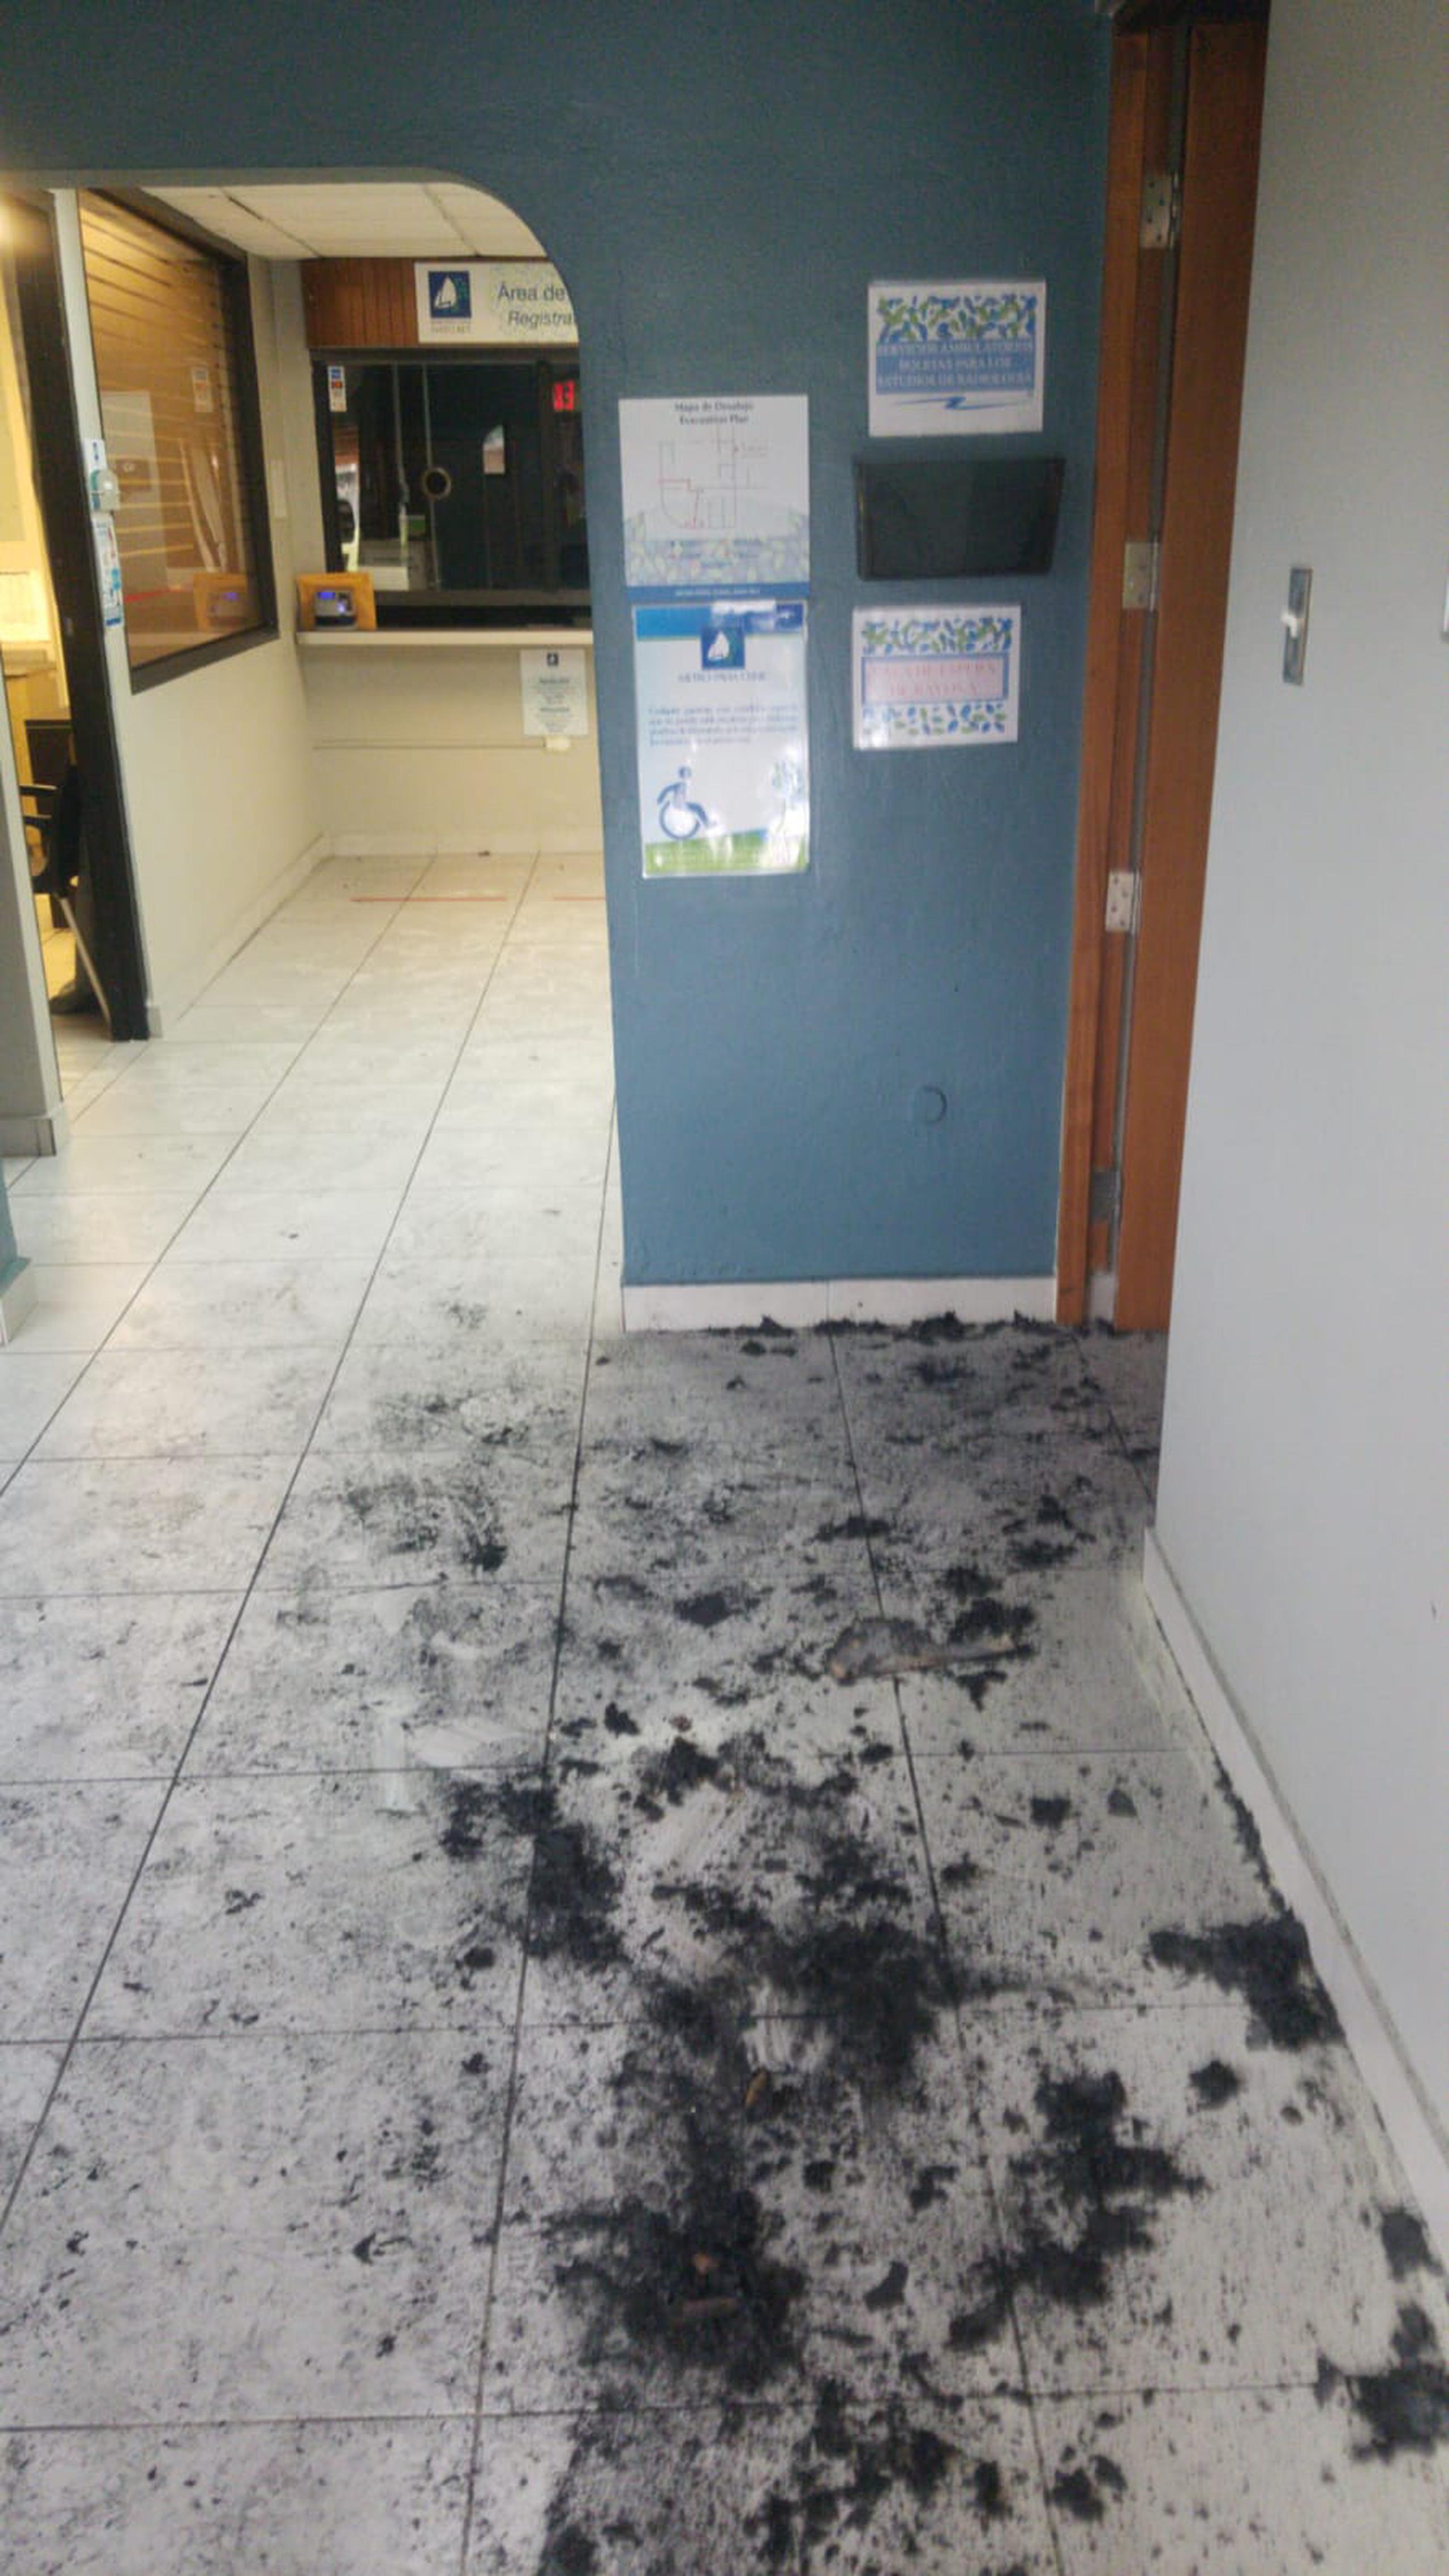 Las oficinas de Metro Pavia Clinic fueron vandalizadas esta madrugada, los delincuentes quemaron una máquina de lectura de Rayos X y se apropiaron de equipo de seguridad.